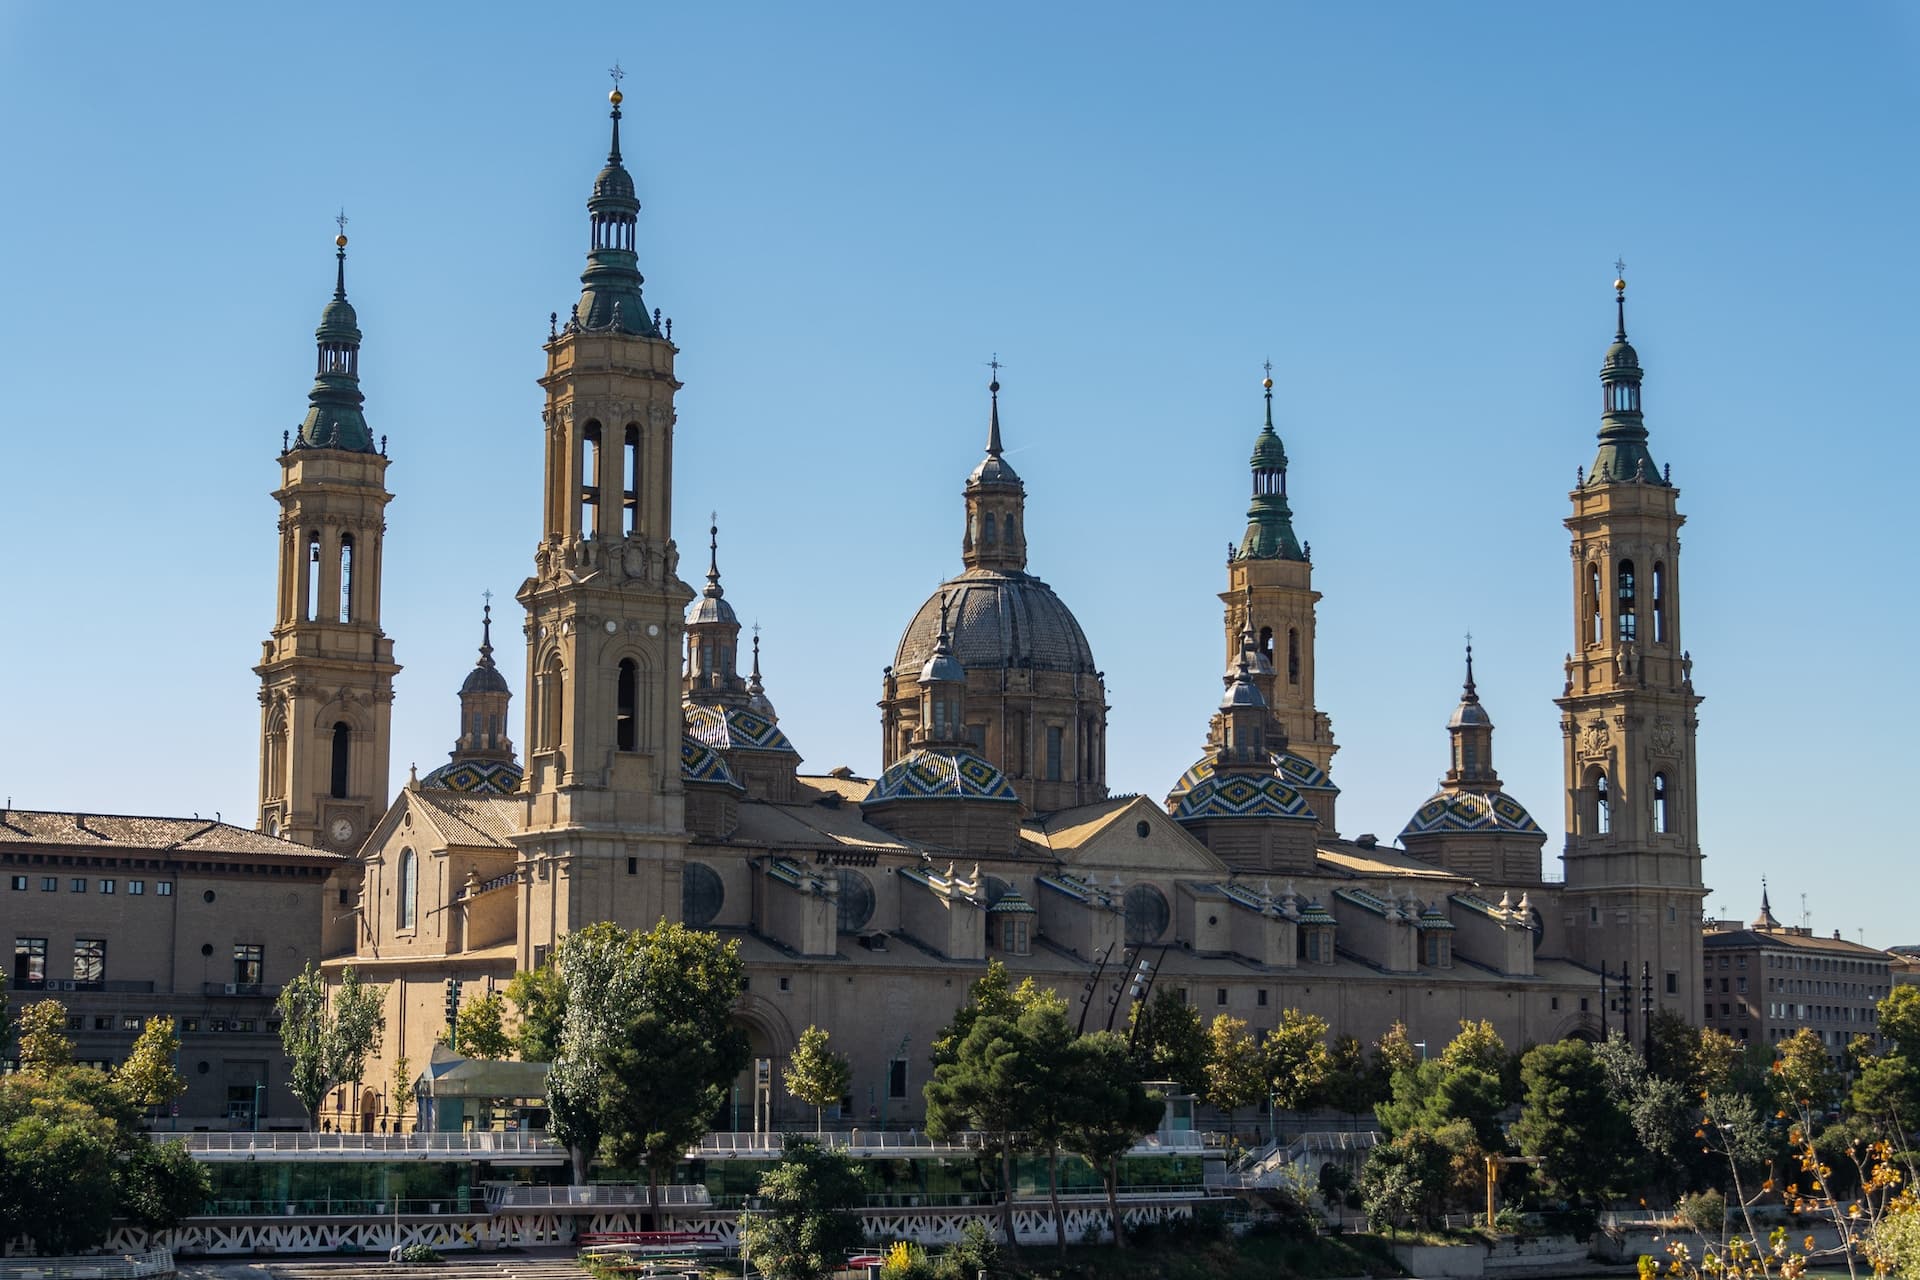 Con sus numerosas atracciones, encantadoras calles adoquinadas, bares de tapas y museos, el Casco Viejo es la mejor zona para alojarse en Zaragoza y vivirla al máximo.